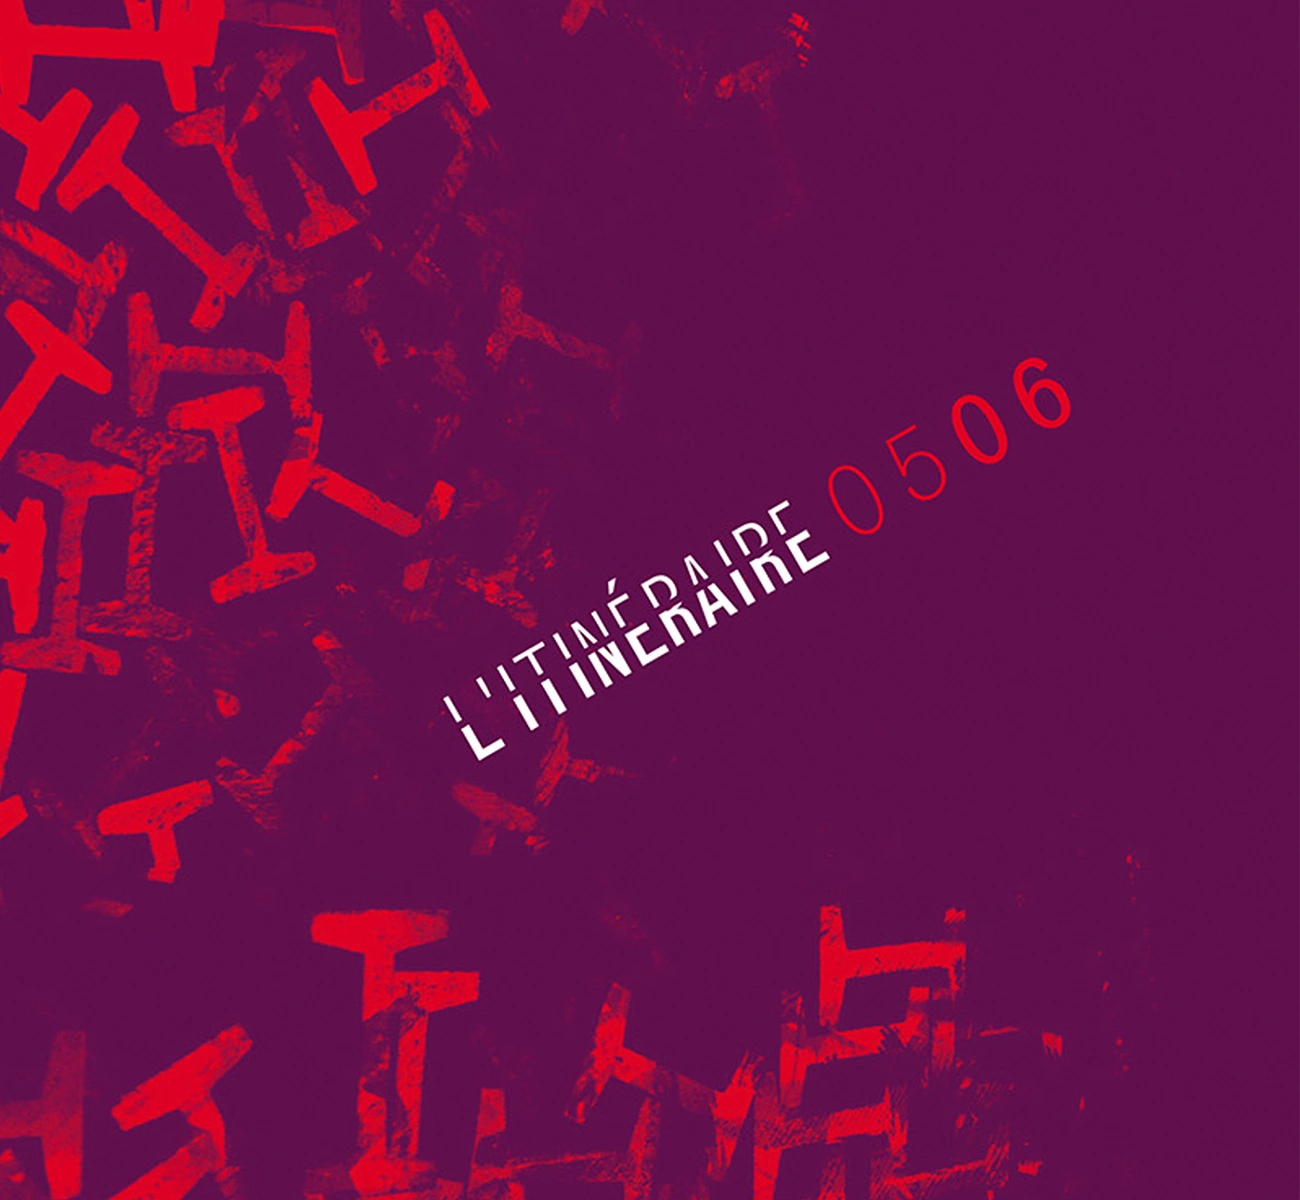 Image de couverture du projet L'Itinéraire 2005 2006 de l'ensemble musical L'Itinéraire de la page portfolio